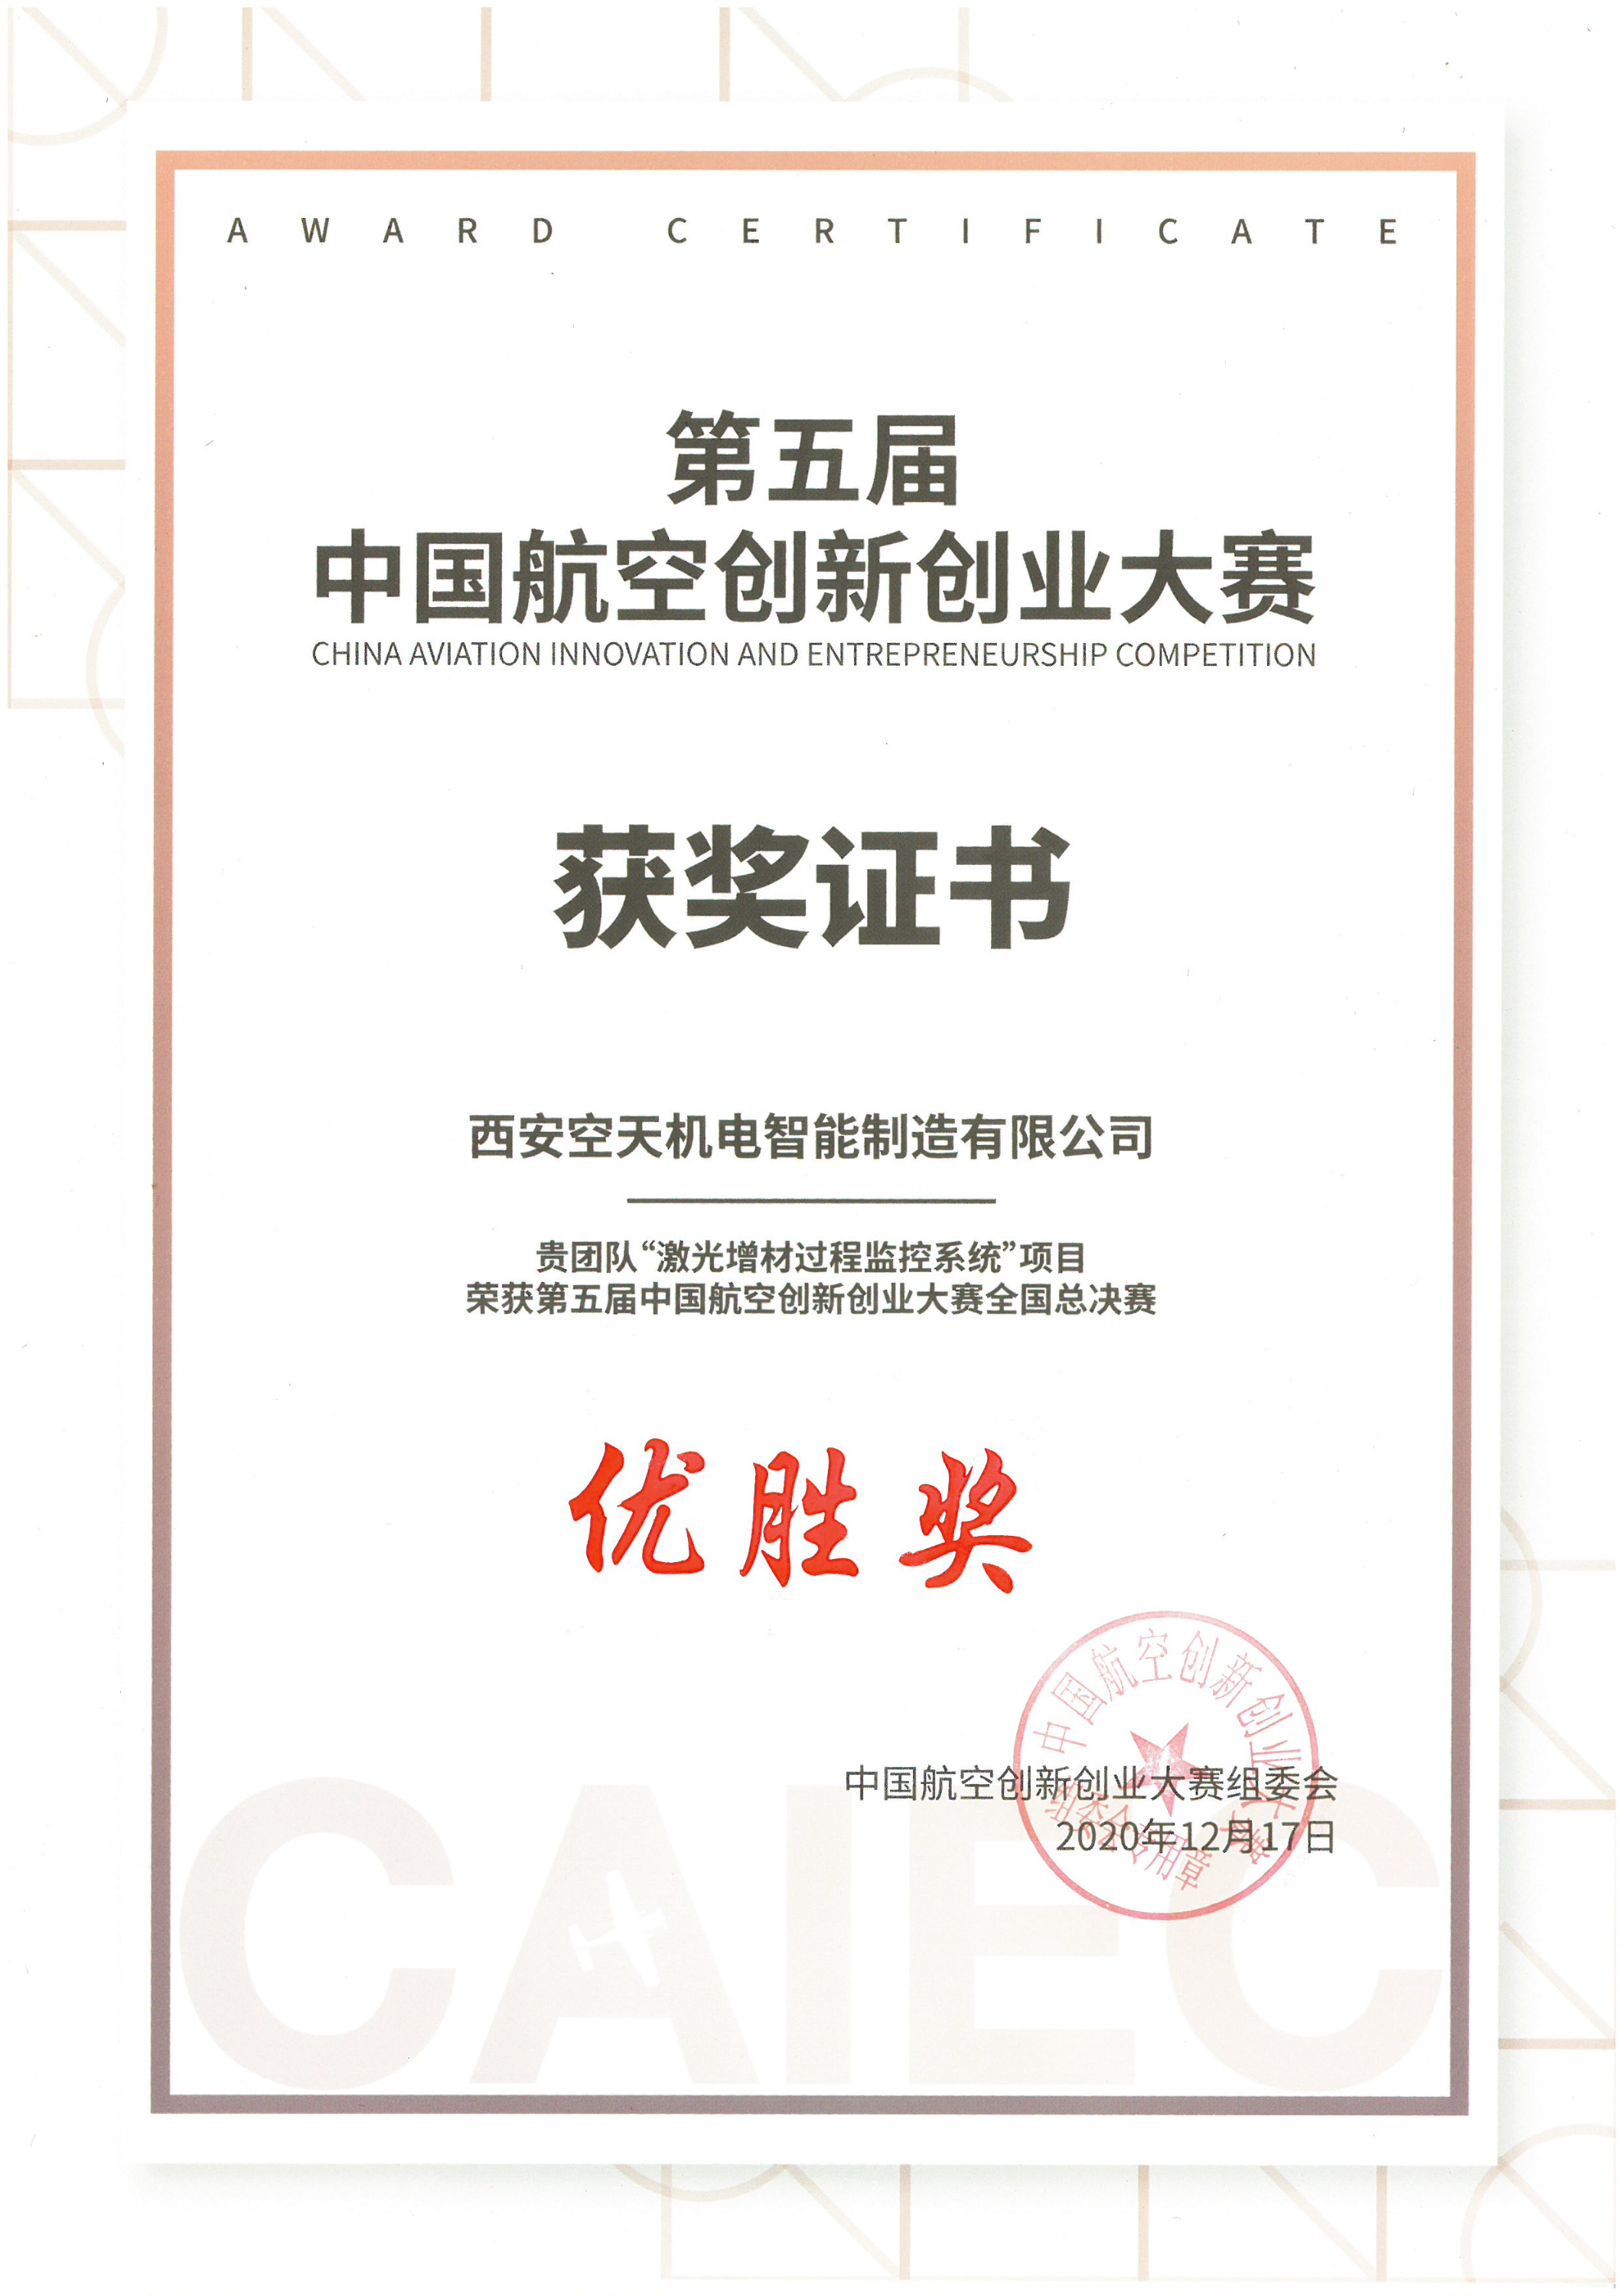 第五届 中国航空创新创业大赛 获奖证书